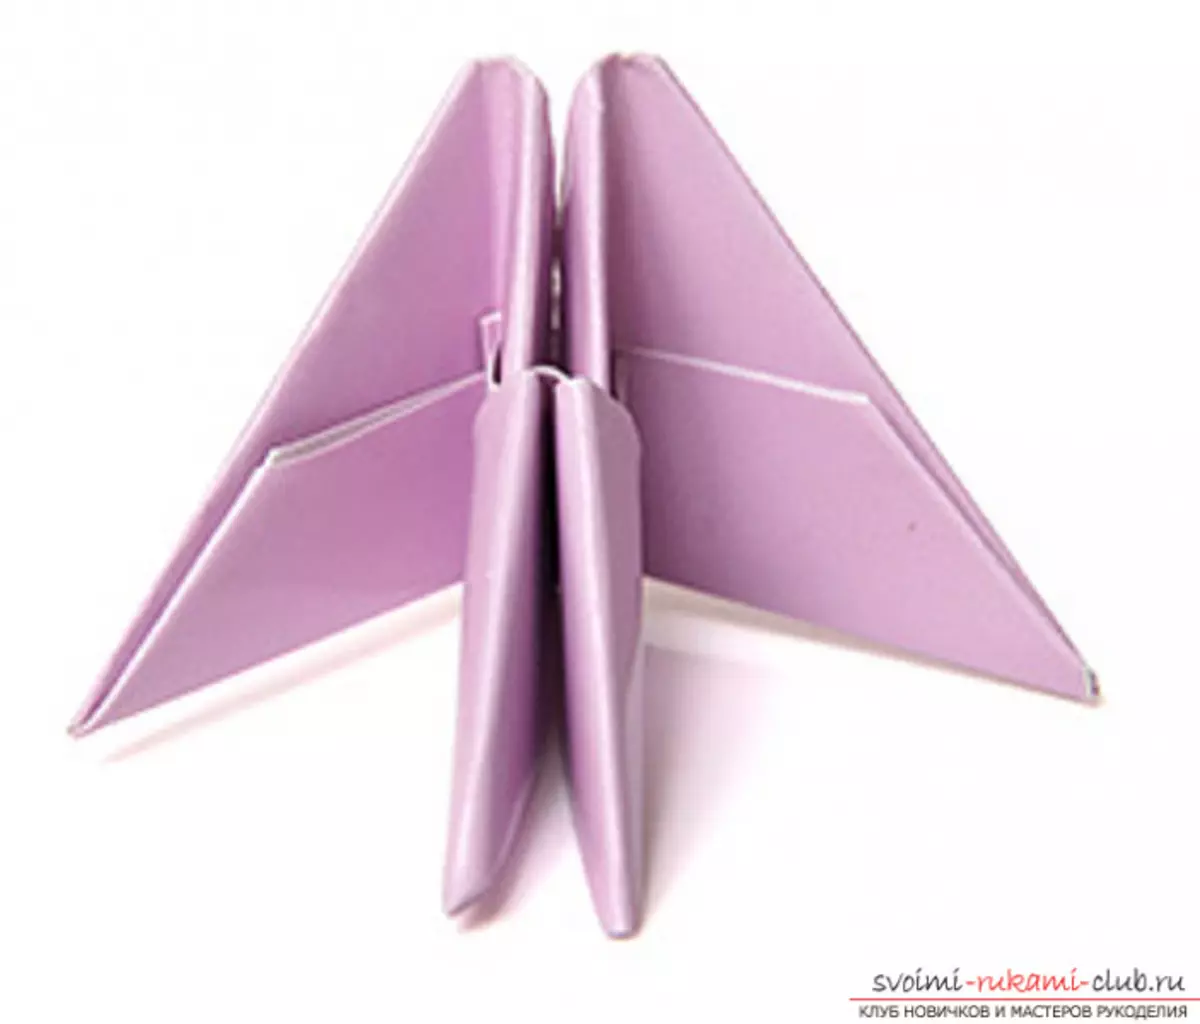 lebed origami从纸质：如何用照片和视频逐步制作